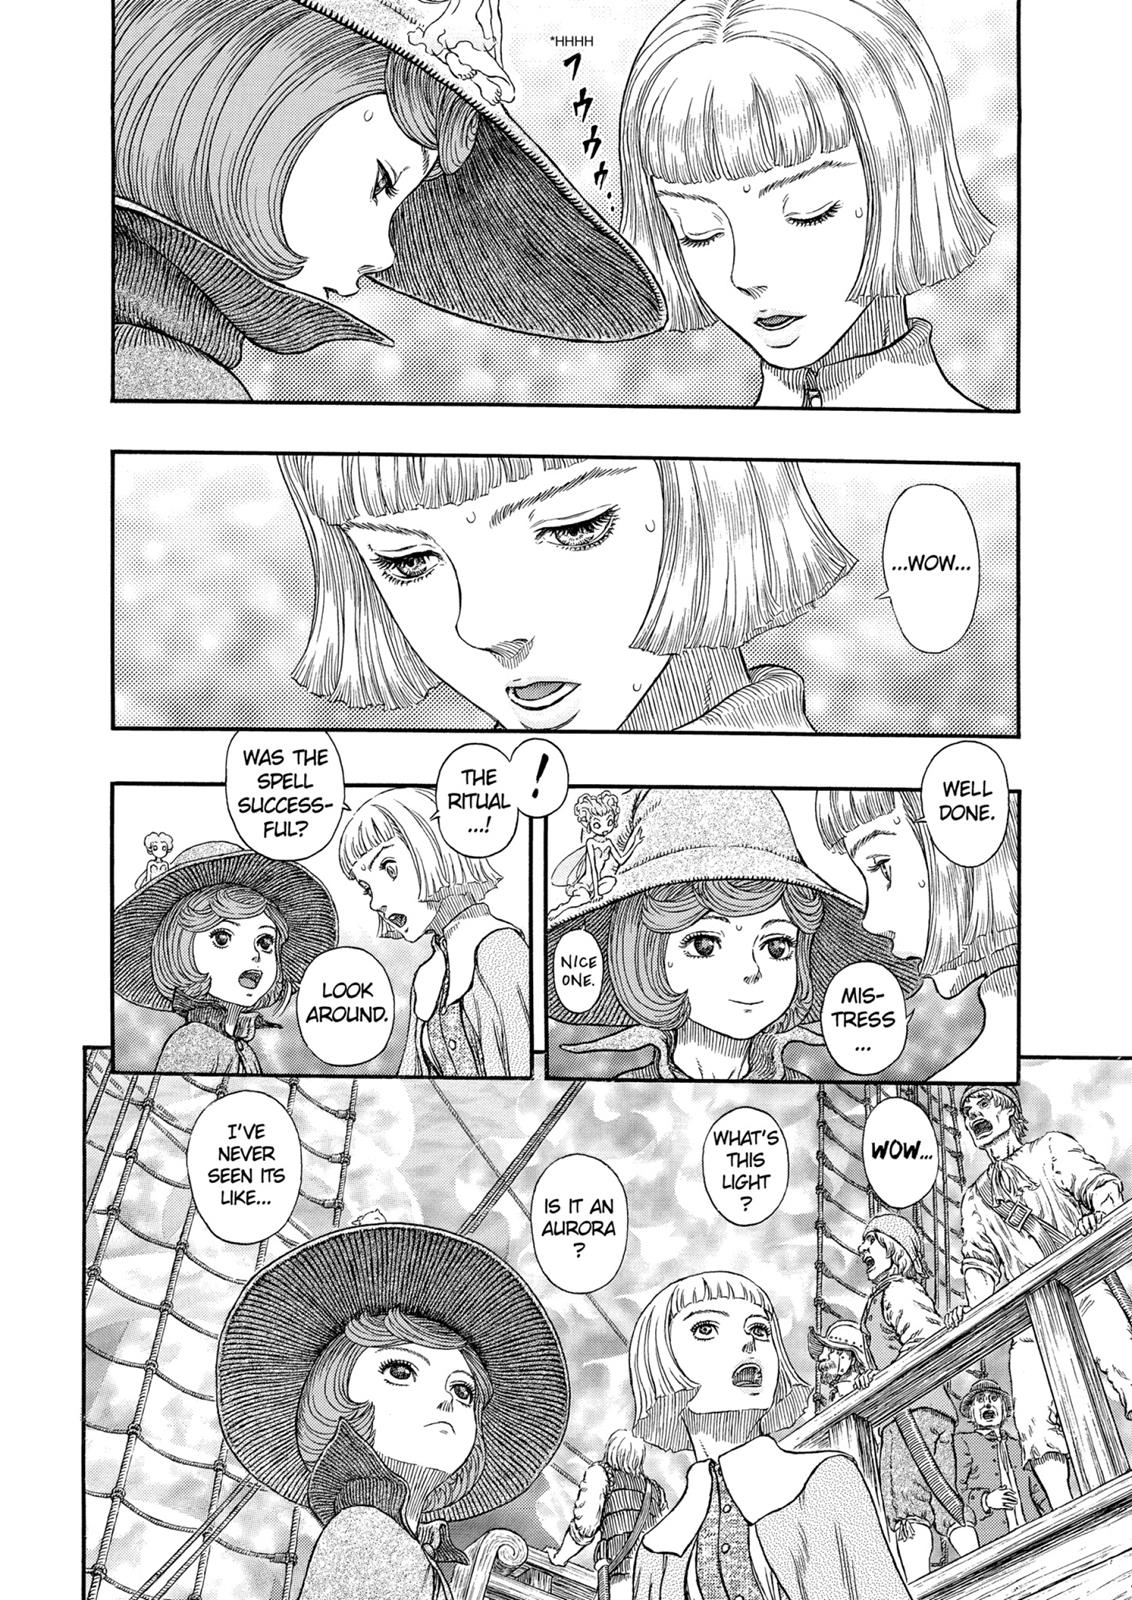 Berserk Manga Chapter 318 image 05